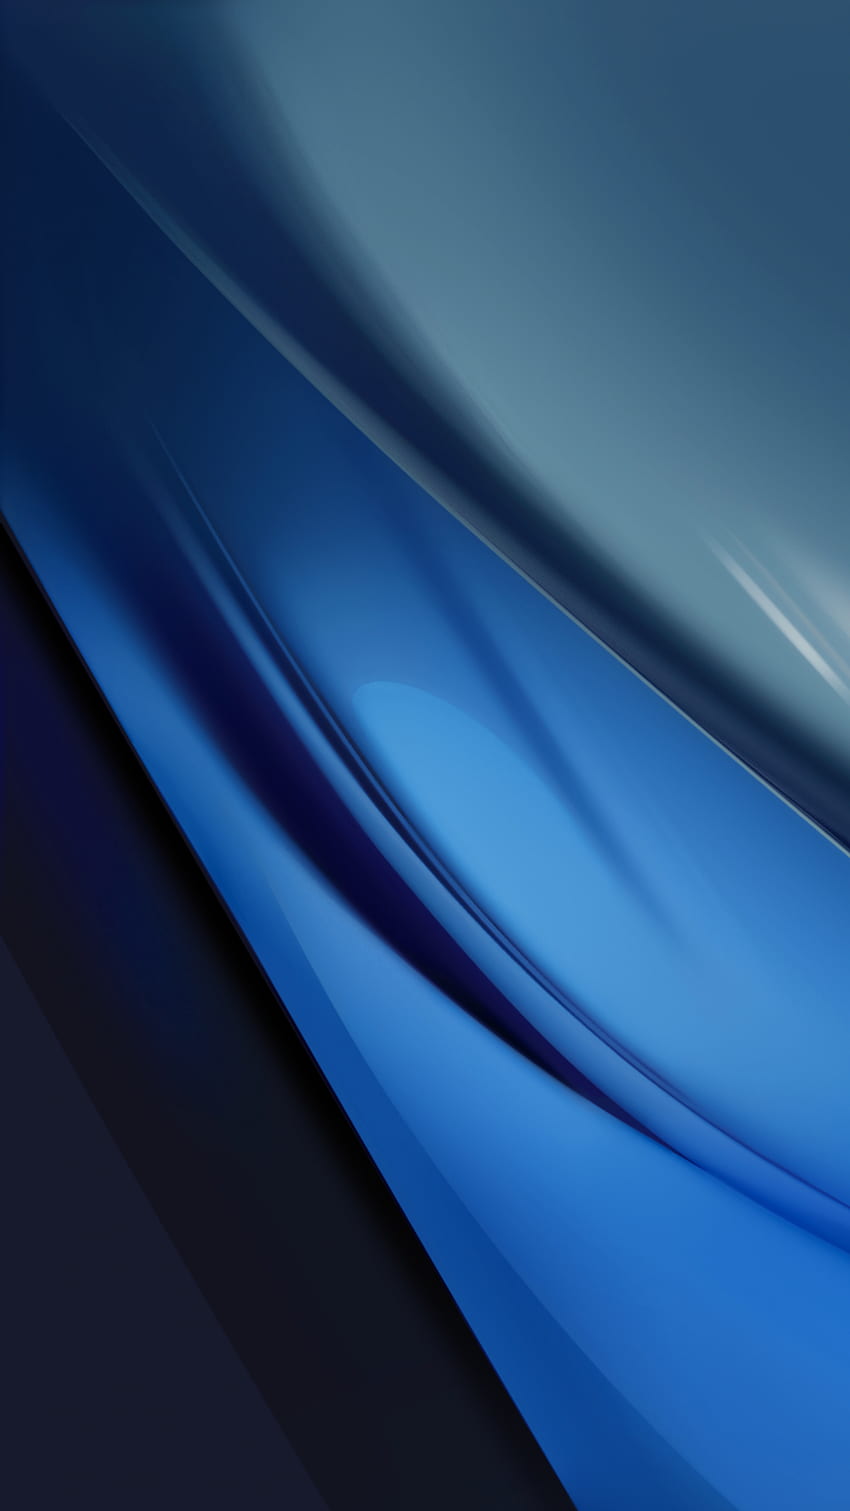 fddsfs, numérique, vagues, bleu électrique, nouveau, ombre, texture, noir, motif, ombre, abstrait, teinte, courbes, bleu, matériel, conception, lignes, lisse Fond d'écran de téléphone HD